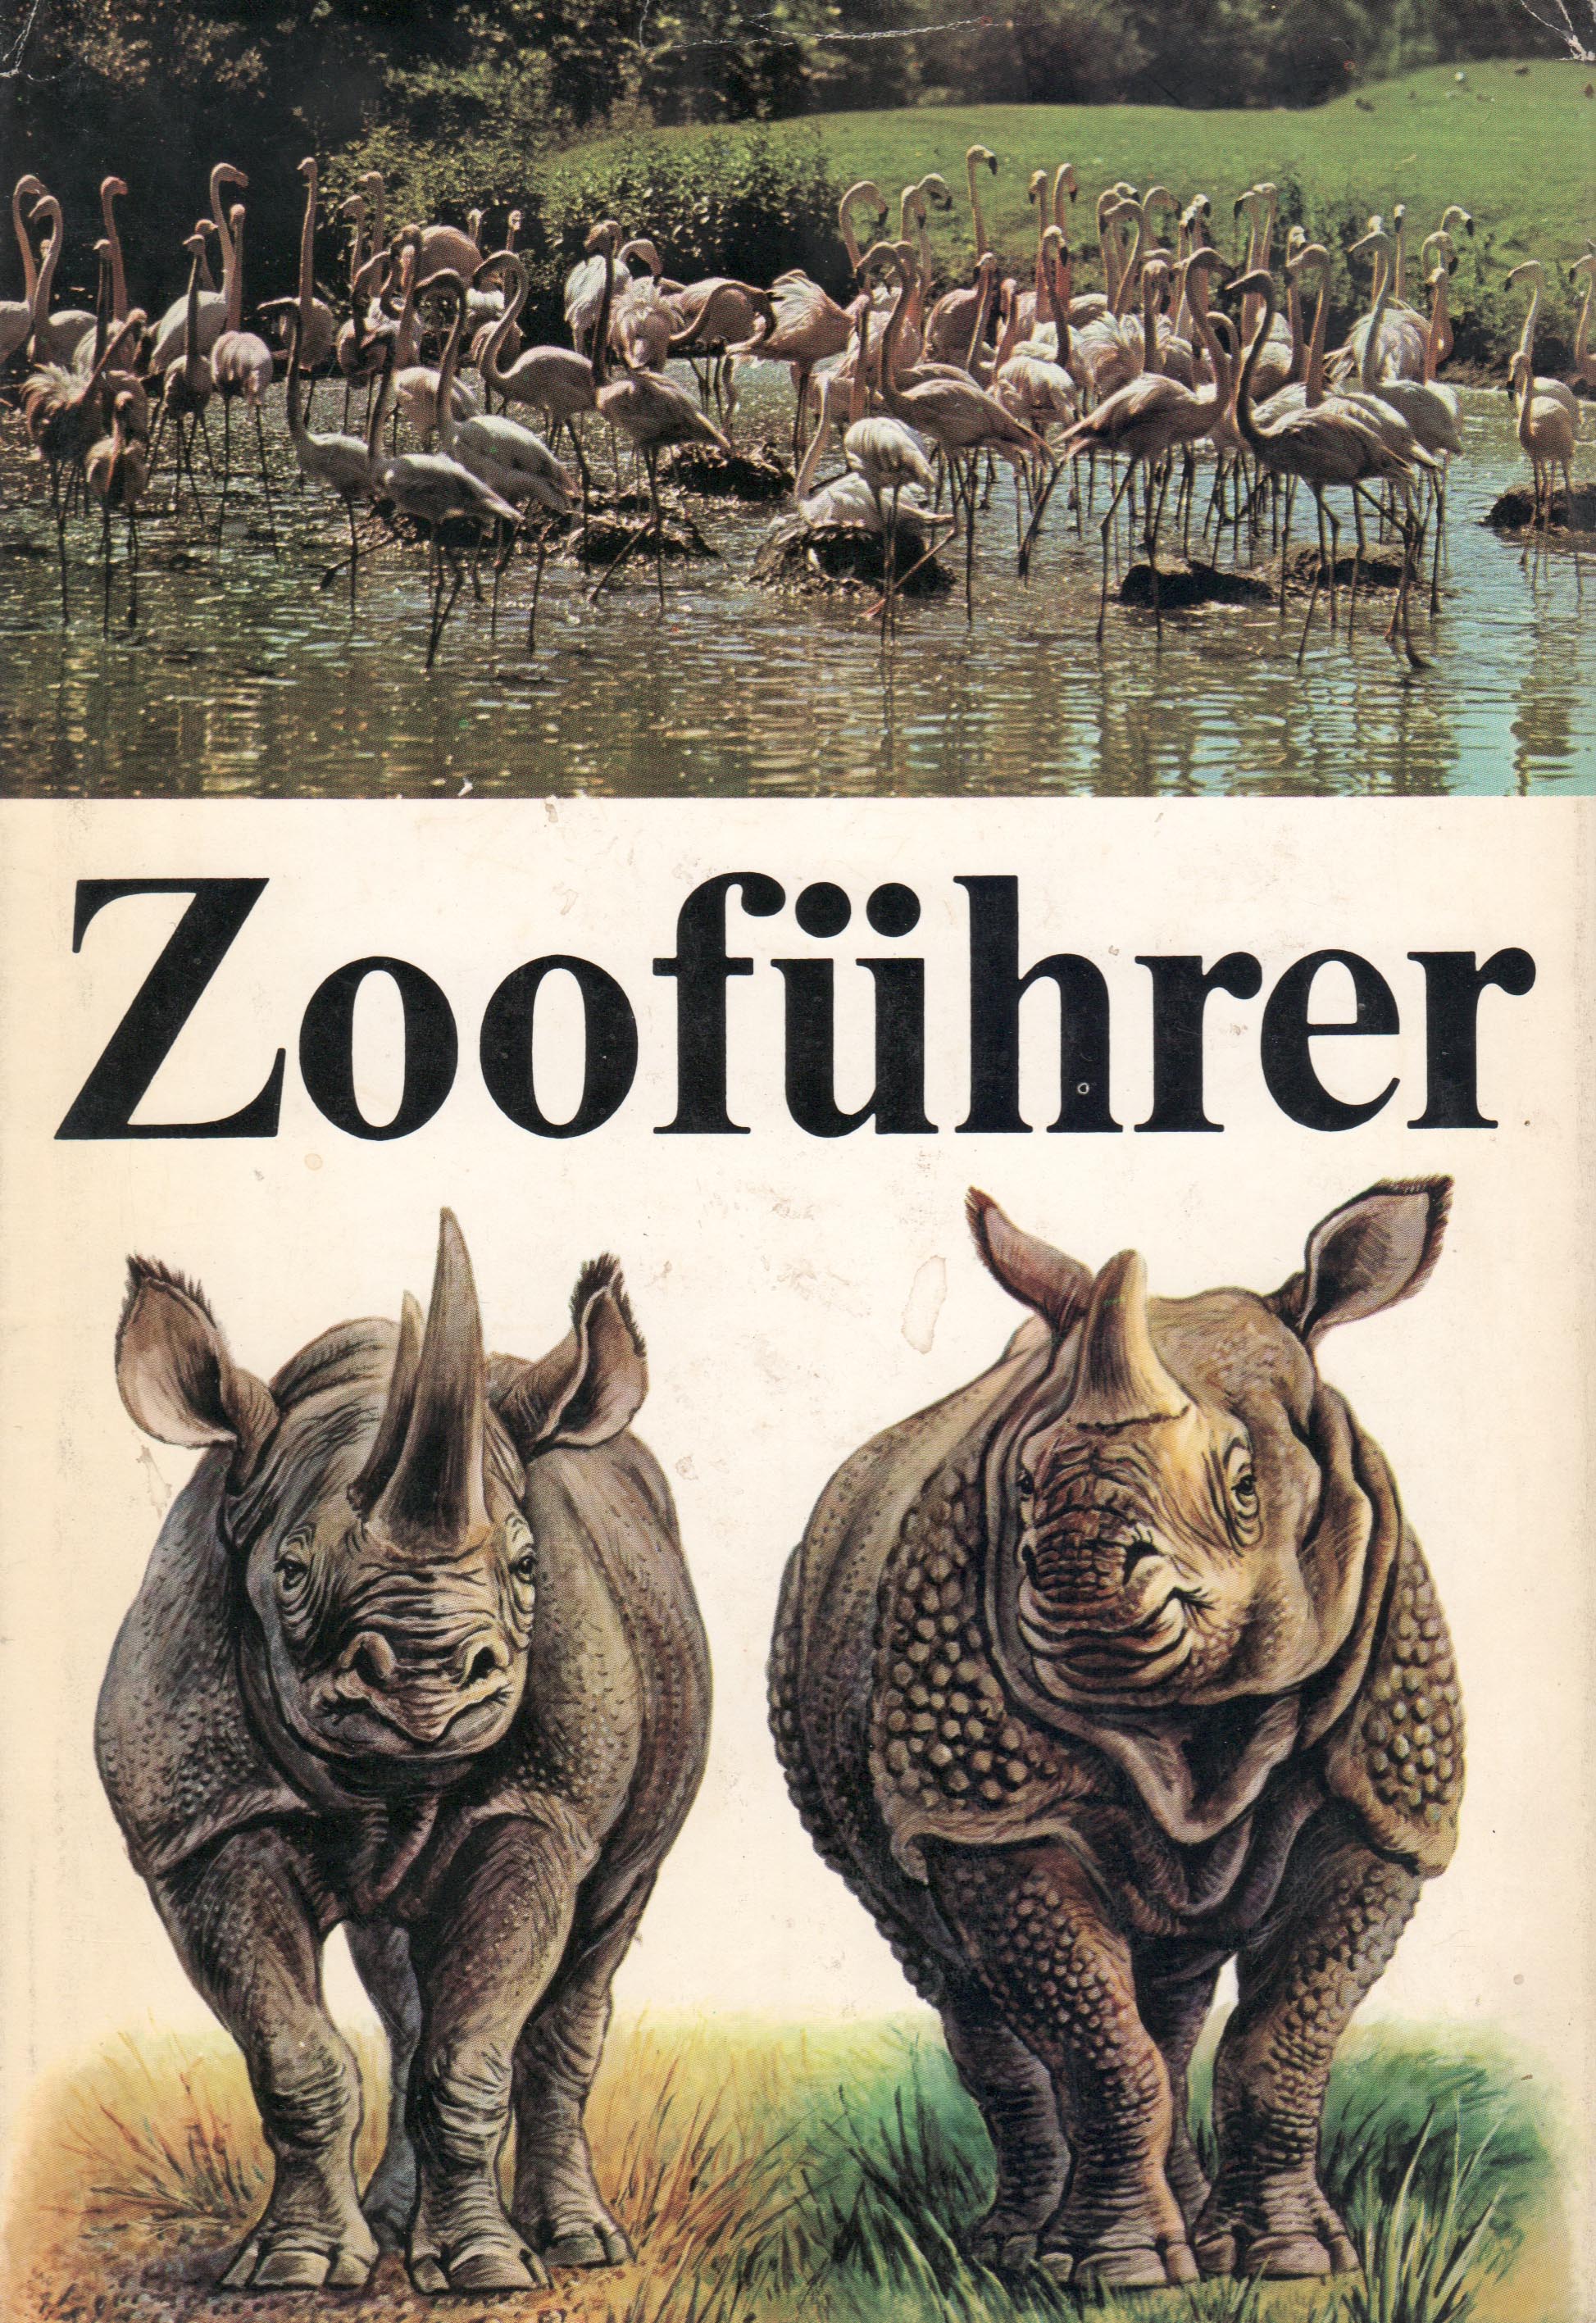 Zooführer